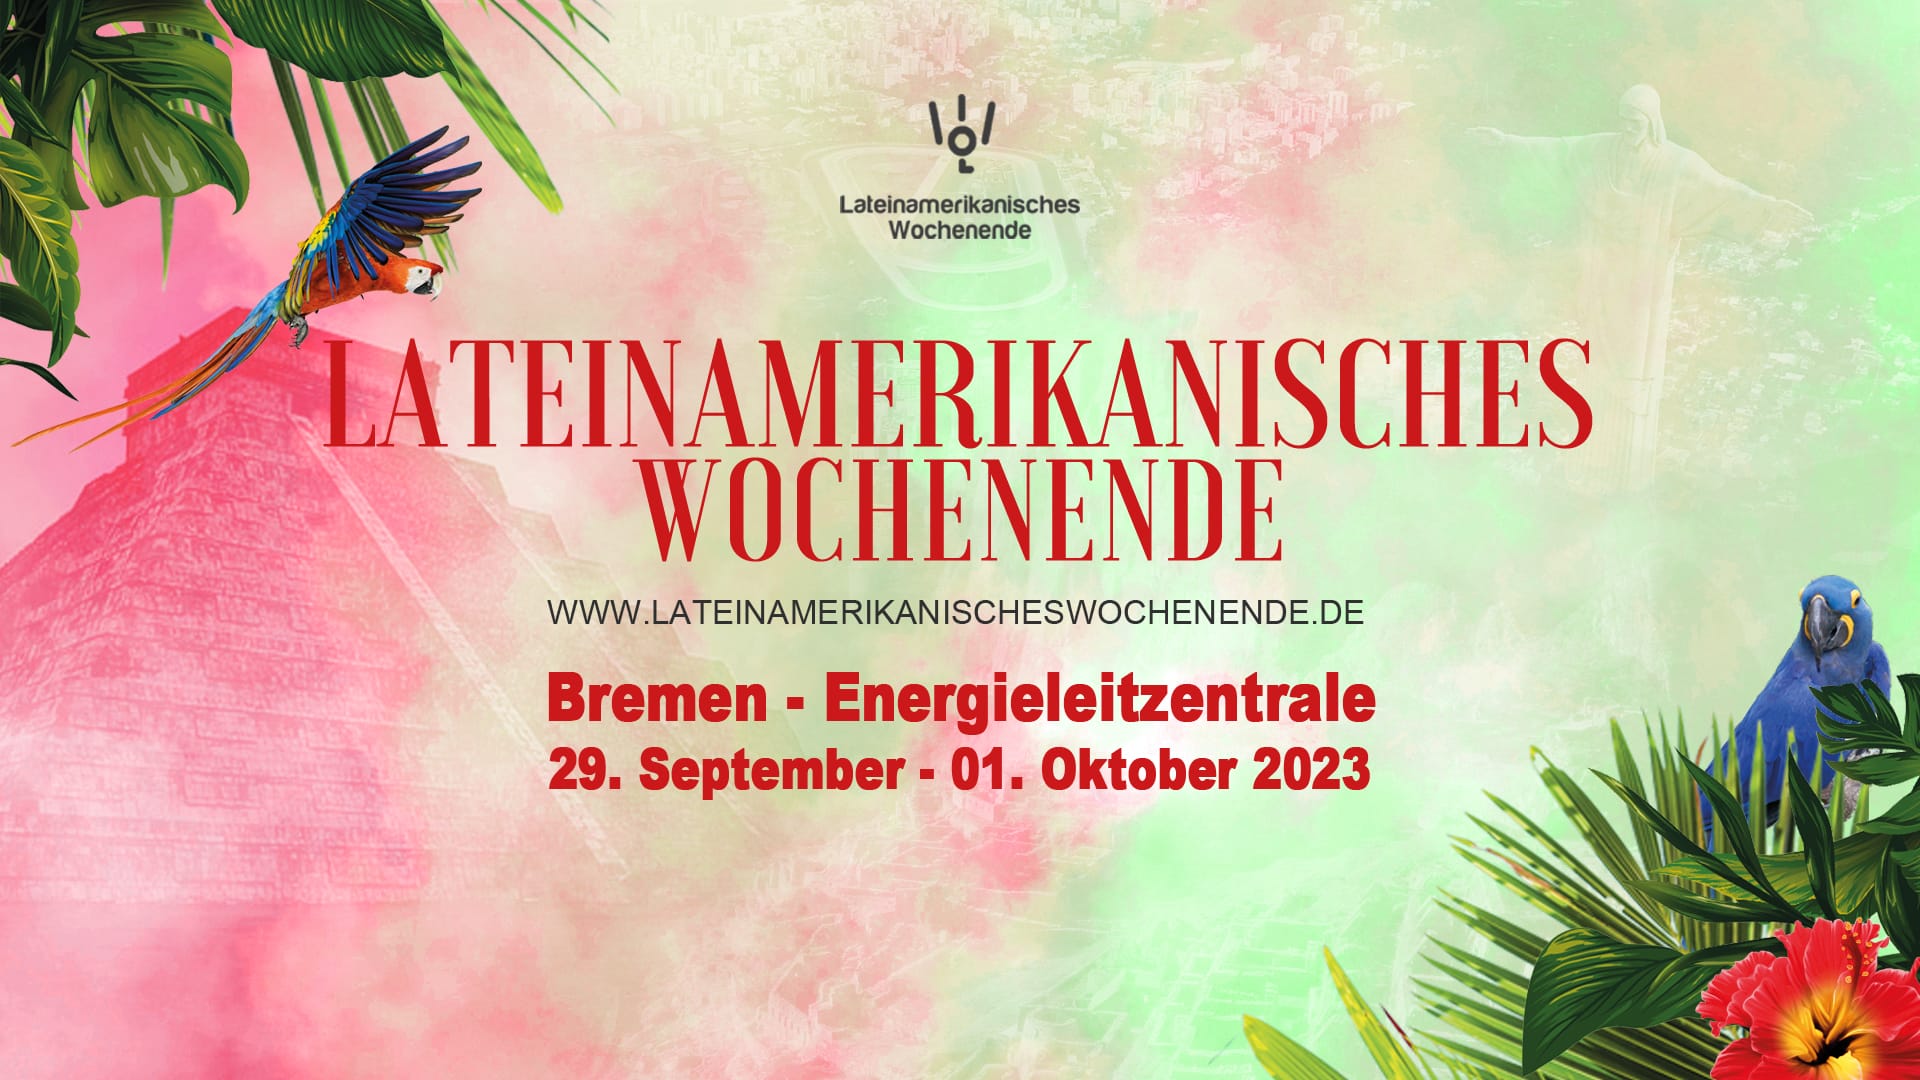 Bremen 29.09.-01.10.2023 Lateinamerikanisches Wochenende